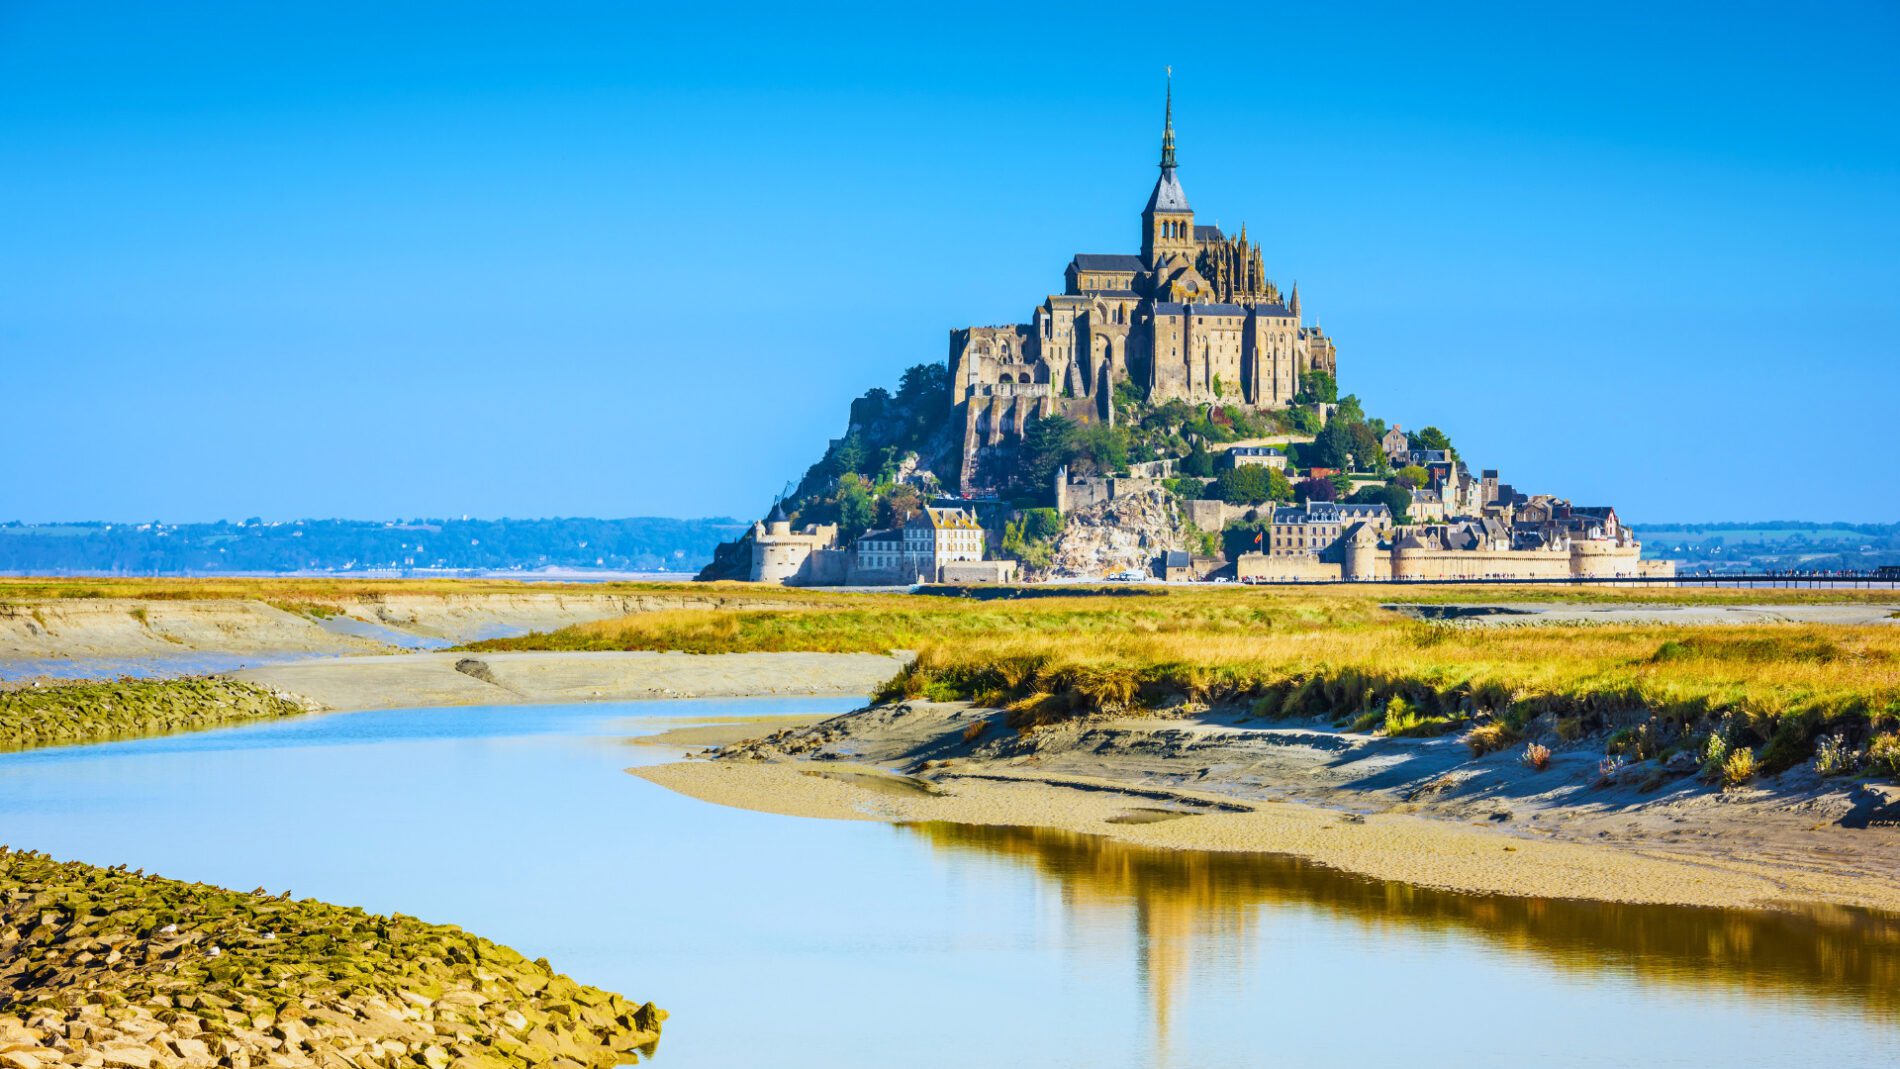 Article "Le Mont Saint-Michel, un lieu sacré" par l'abbé Jean-Luc Blanchette | Spiritours